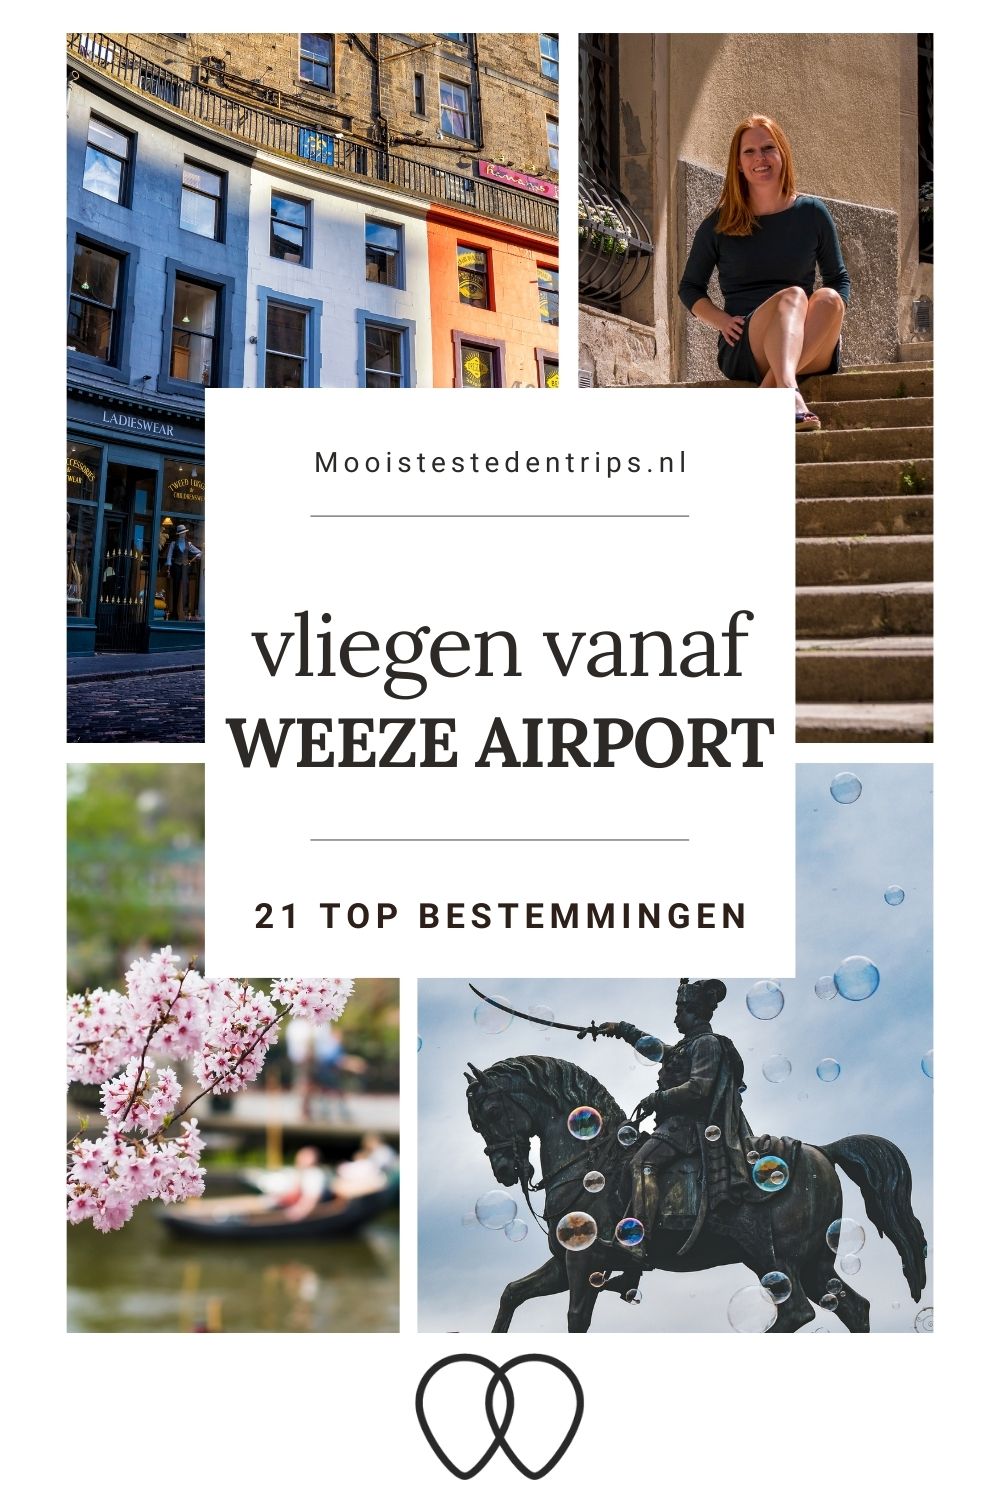 Vliegen vanaf Weeze Airport? Bekijk de voordelen en de leukste bestemmingen vanaf Weeze Airport | Mooistestedentrips.nl